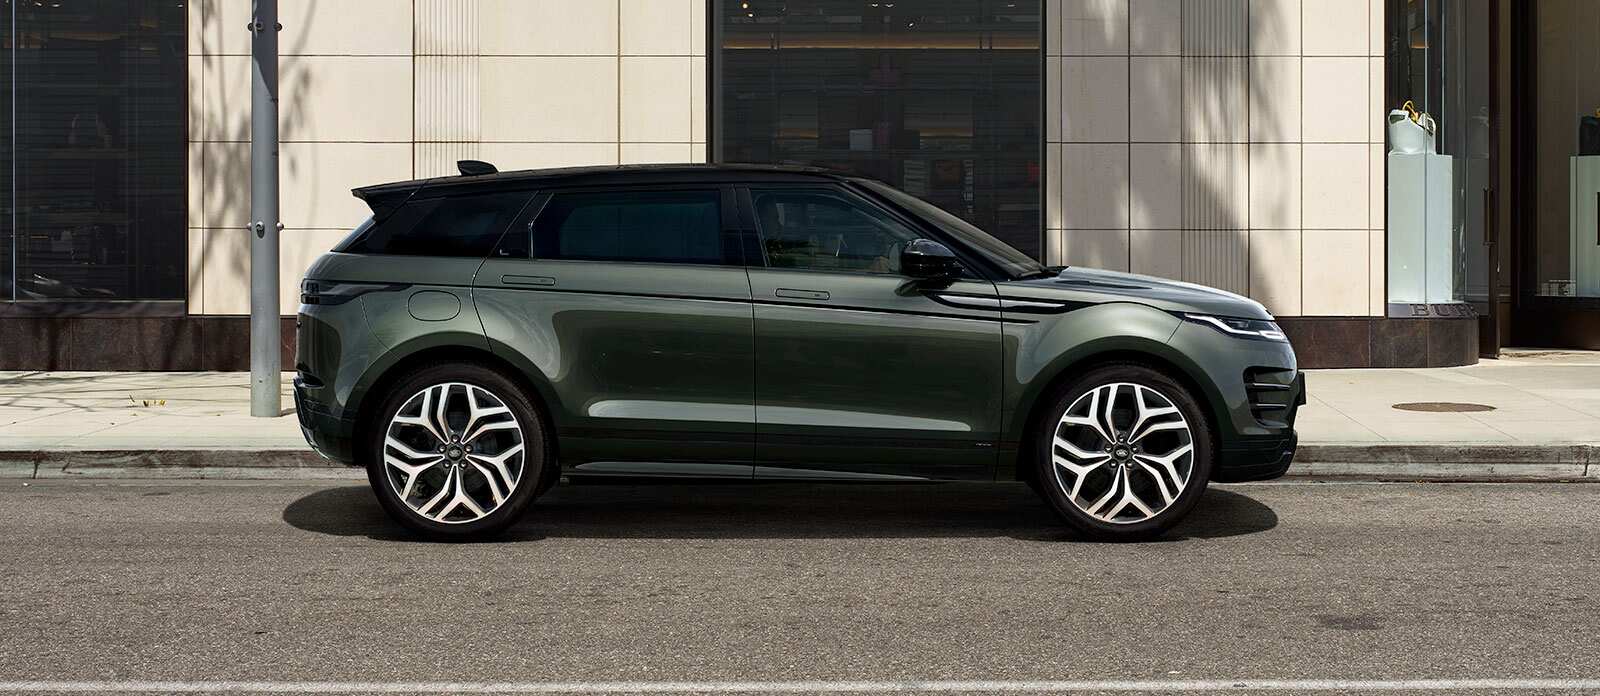 Range Rover Evoque in dark green parked side view